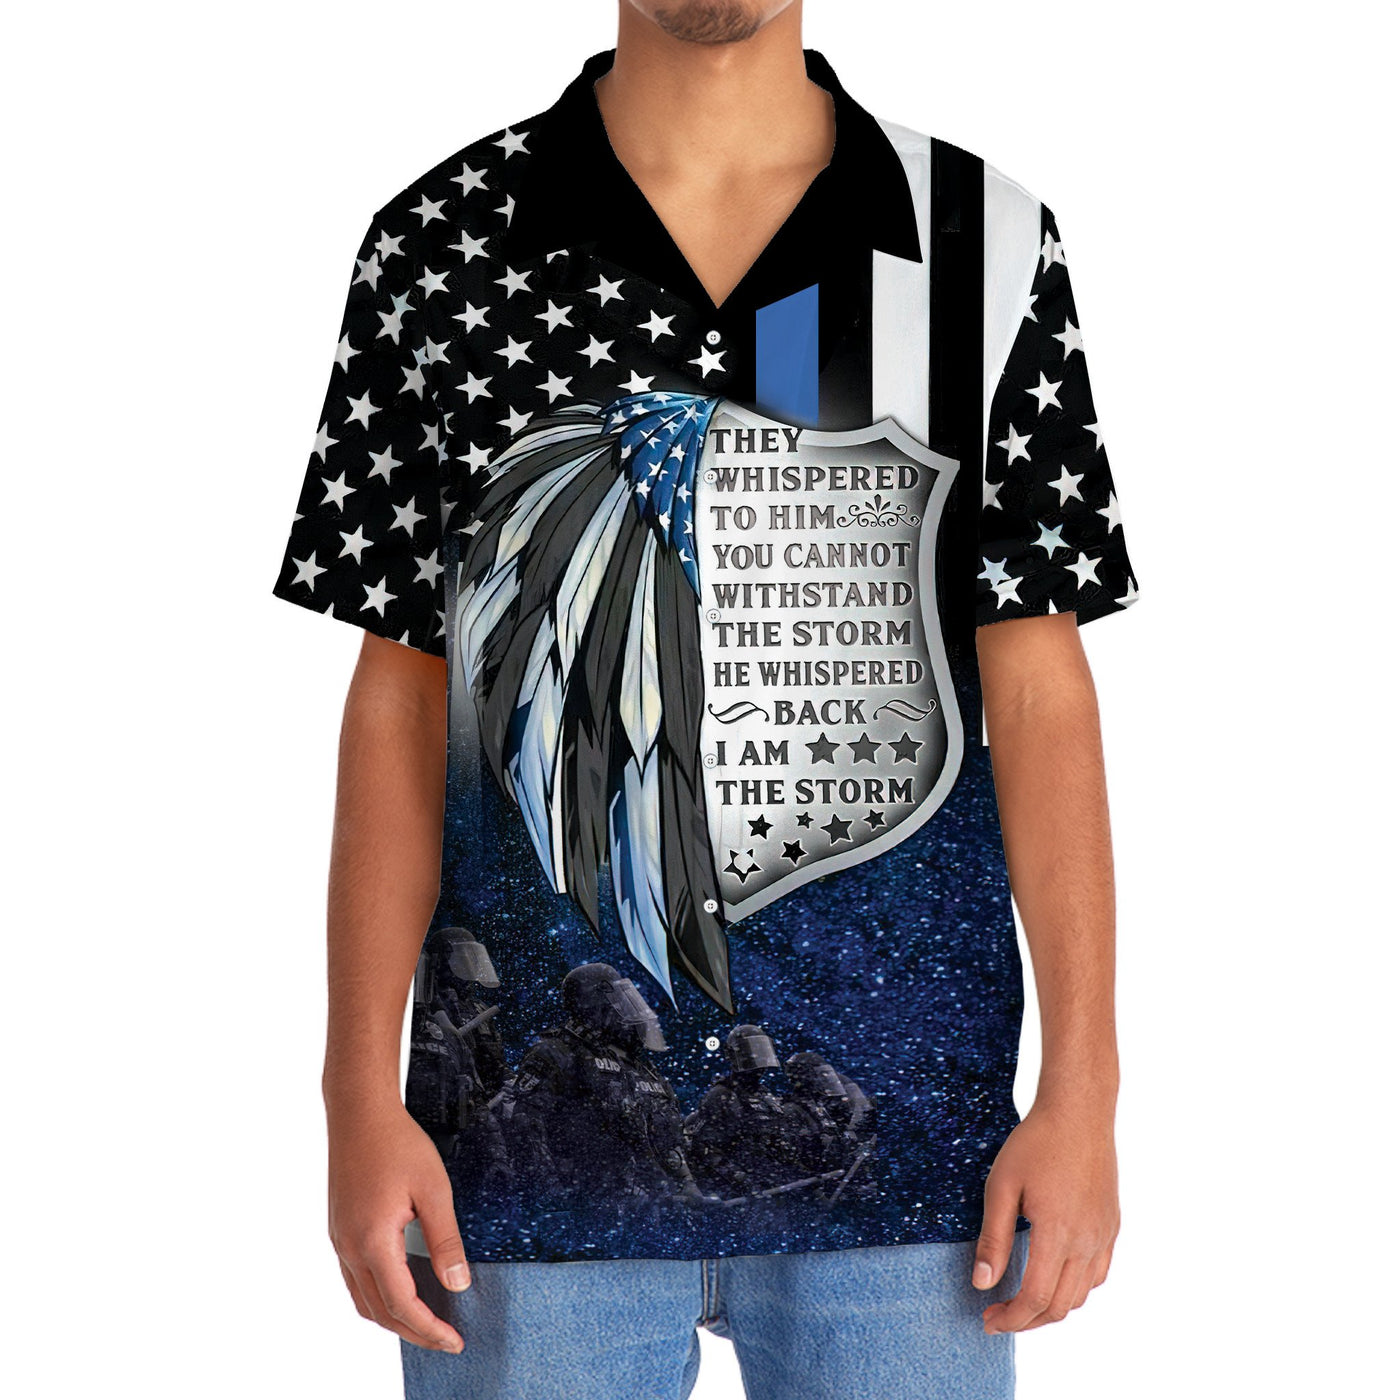 Police Proud Hawaiian Shirt